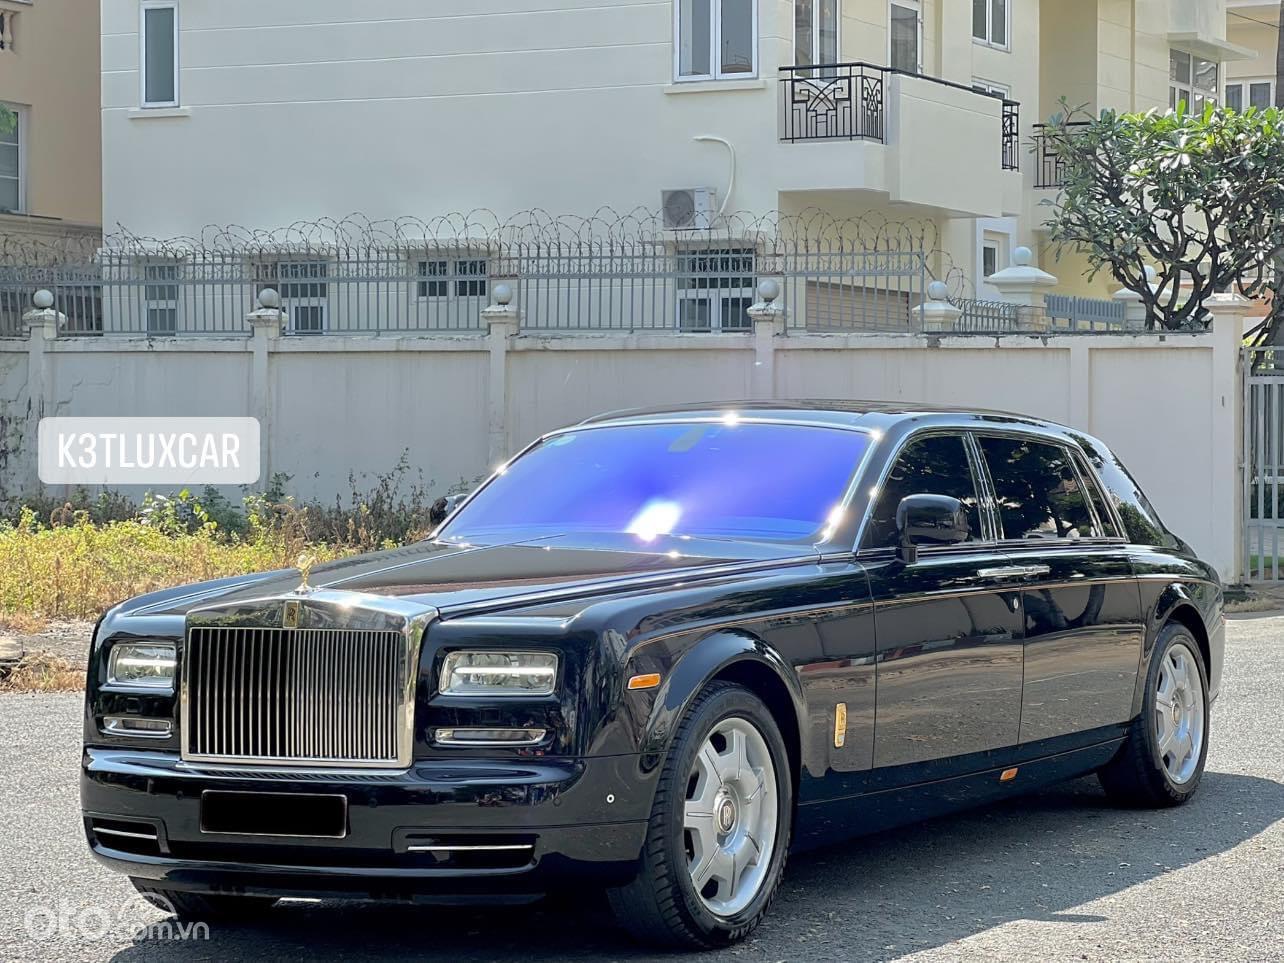 Mua bán xe Rolls Royce Phantom 2015 màu trắng 072023  Bonbanhcom